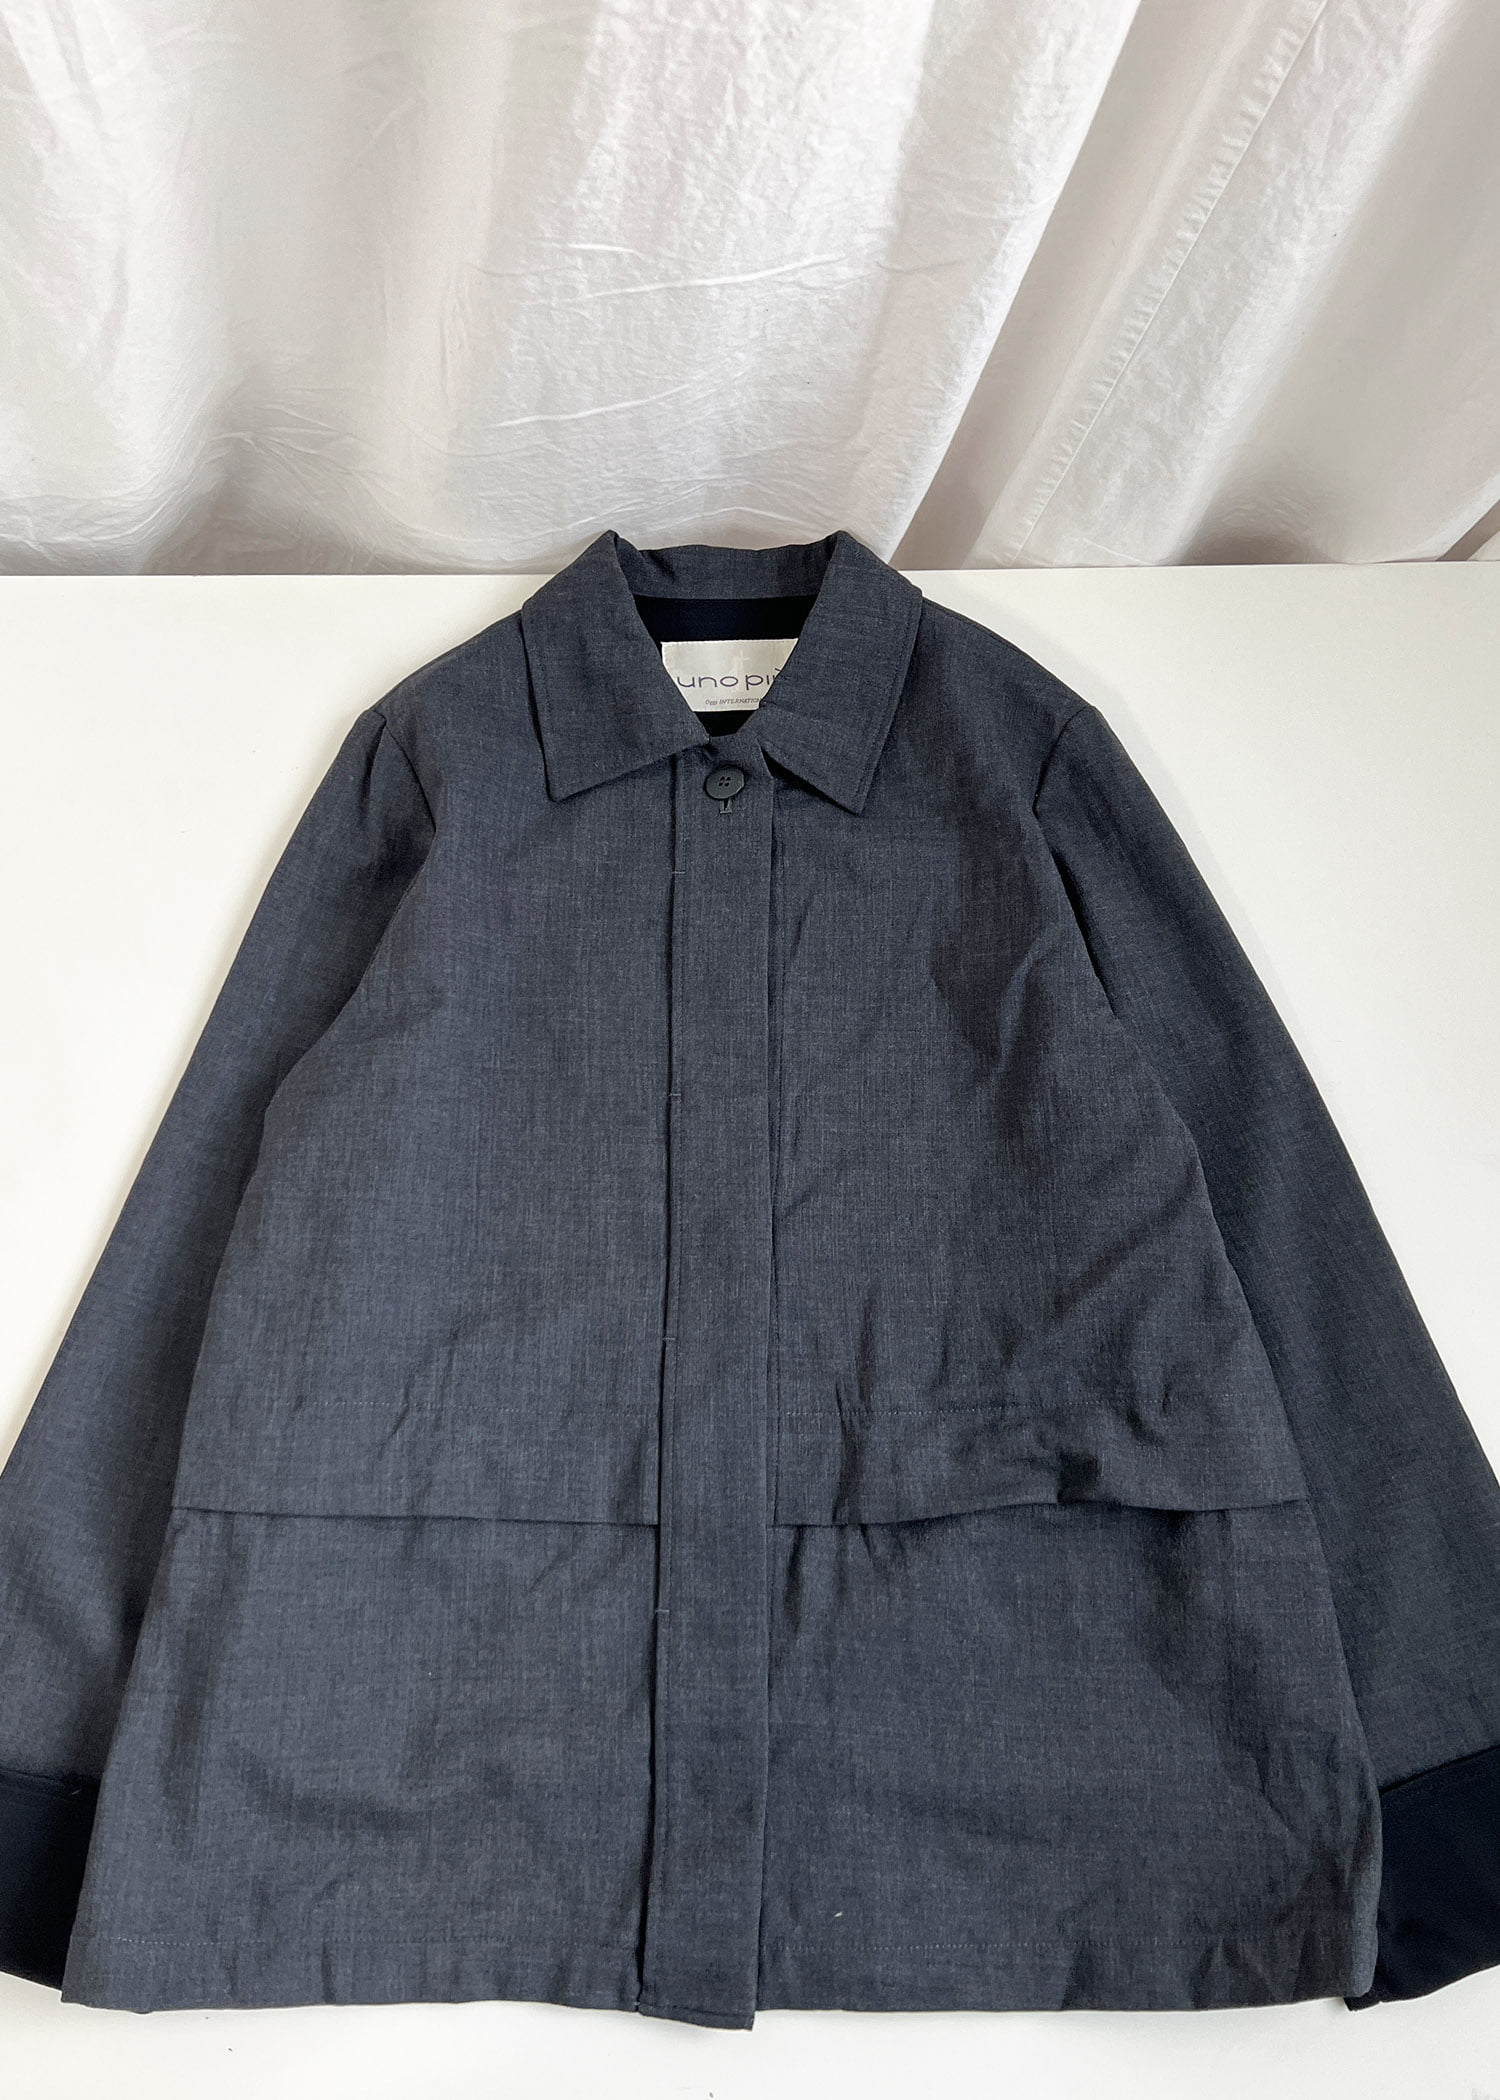 select vintage : minimal jacket